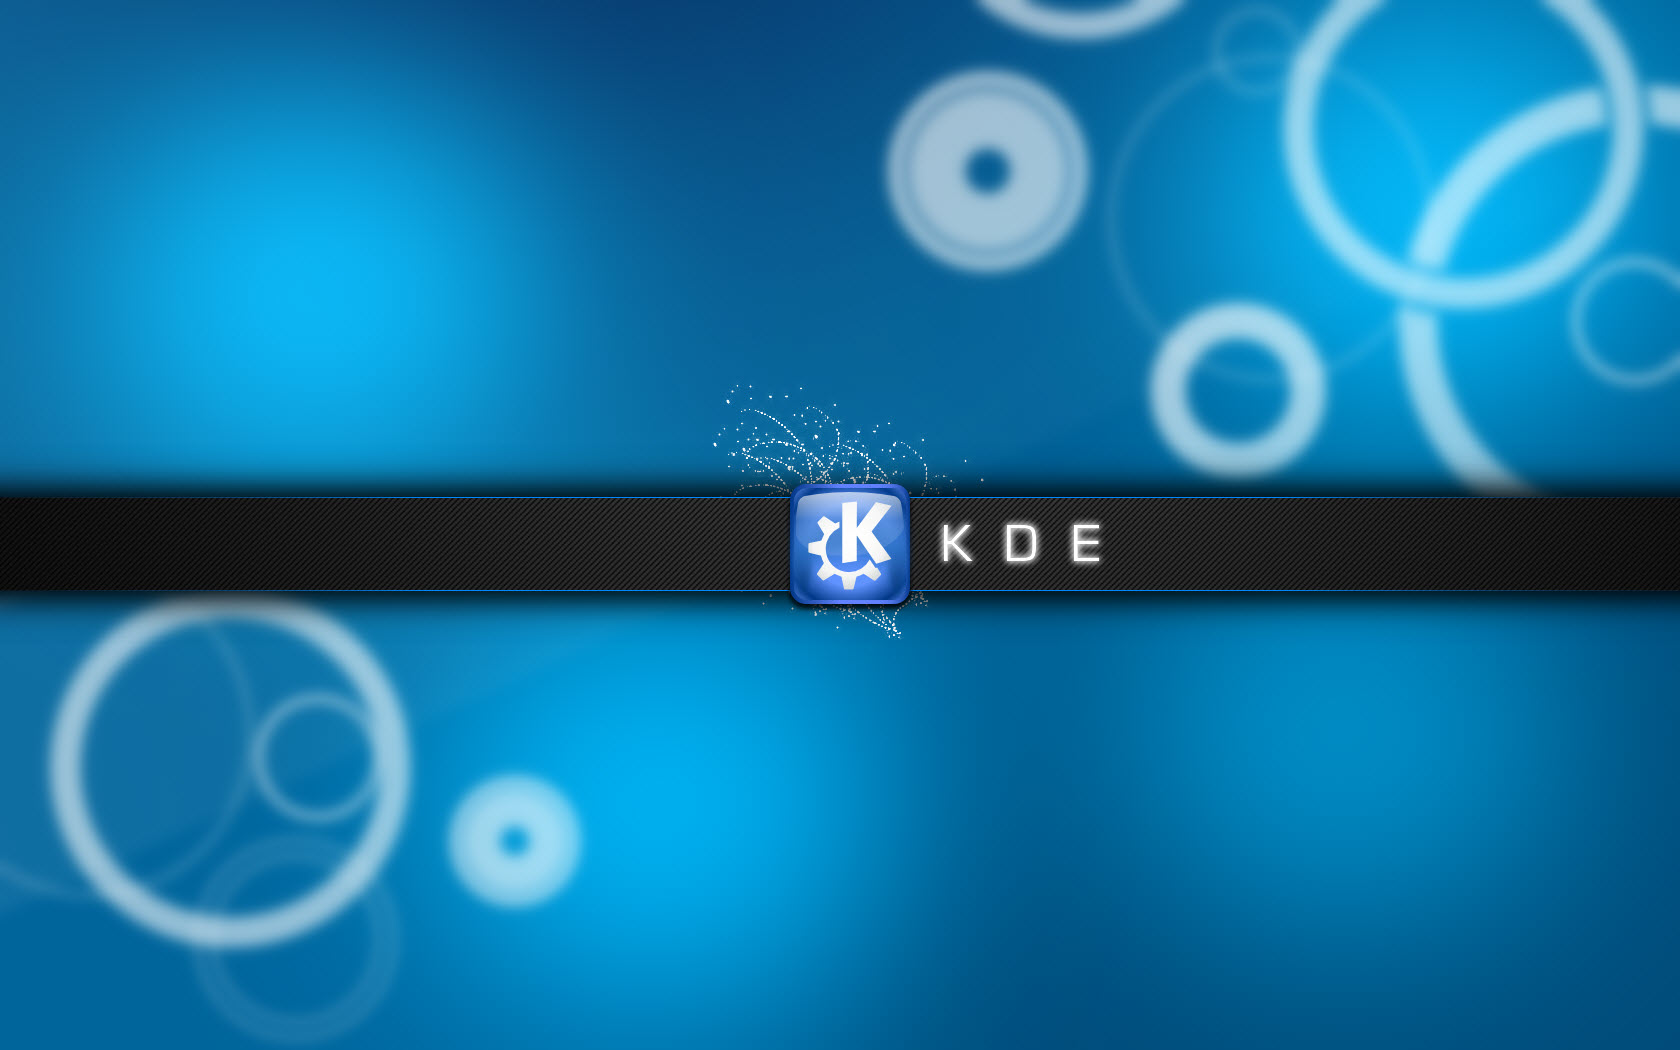 Hình nền HD trải nghiệm tự do KDE là lựa chọn tuyệt vời để tăng cường trải nghiệm người dùng. Bạn sẽ được đắm chìm trong những bức hình nền chất lượng cao, thể hiện sự tự do và sáng tạo của KDE. Click ngay để khám phá!